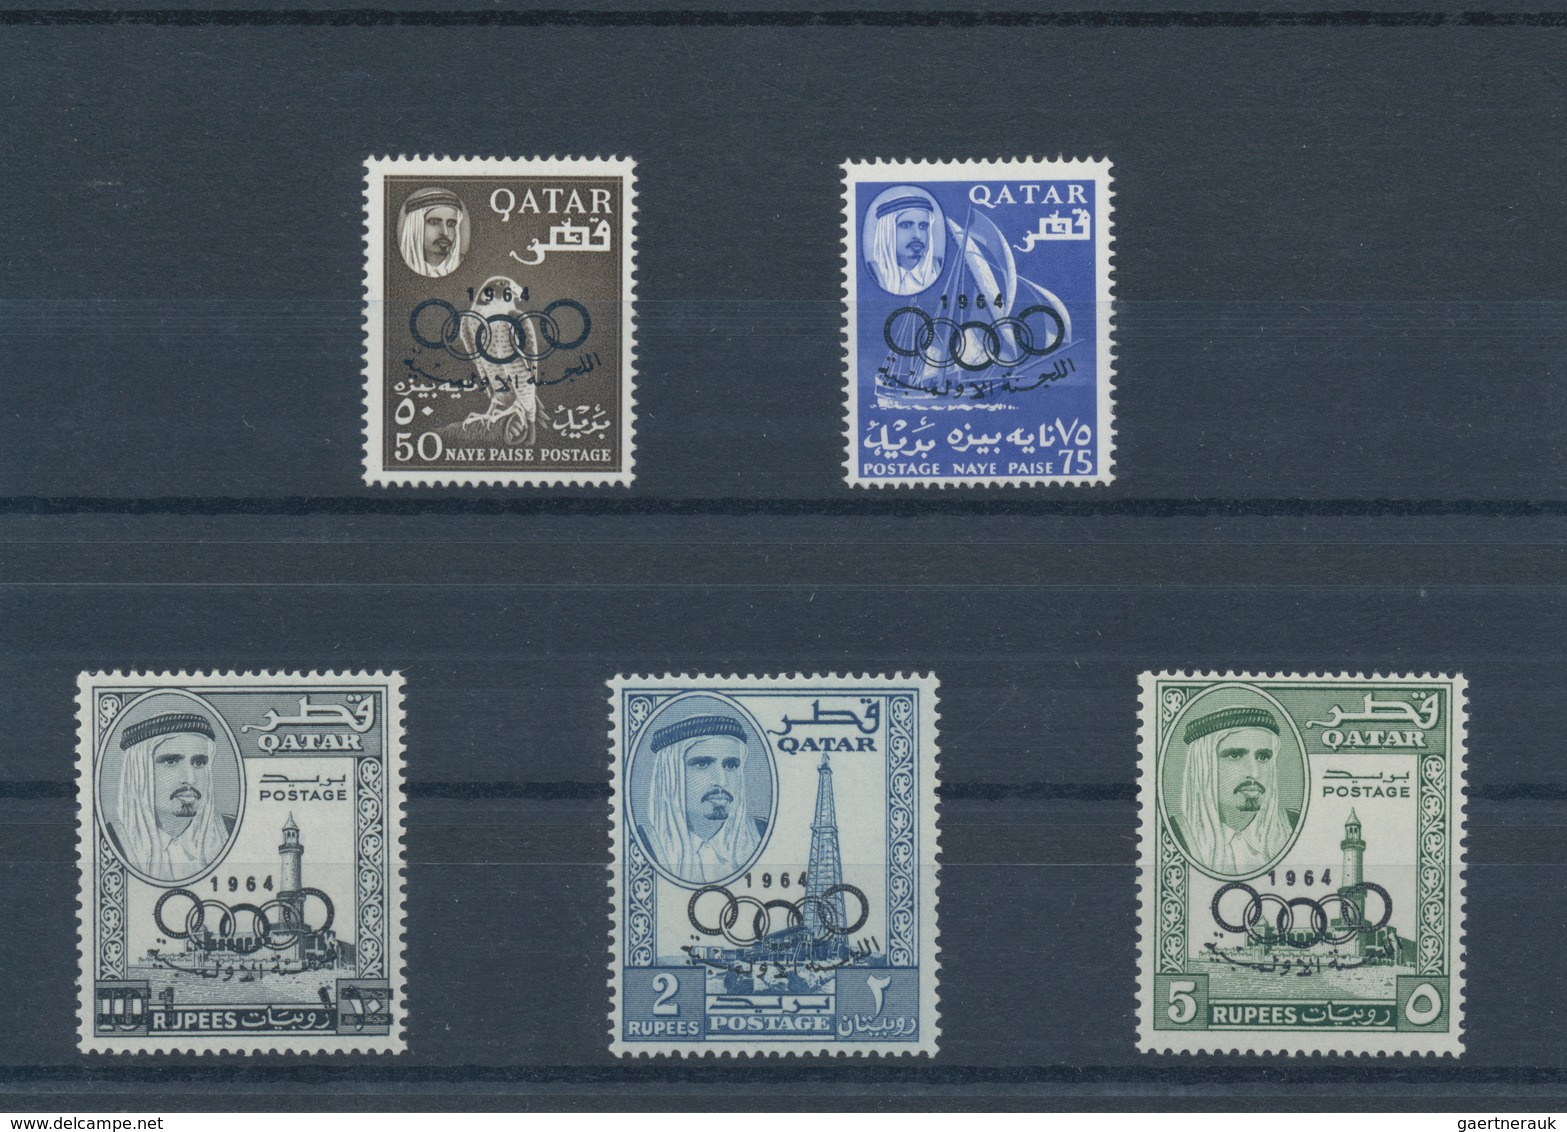 23326 Katar / Qatar: 1957/1972, Mint Assortment On Stockcards From Ovp. On GB, E.g. 1961 Definitives (2), - Qatar